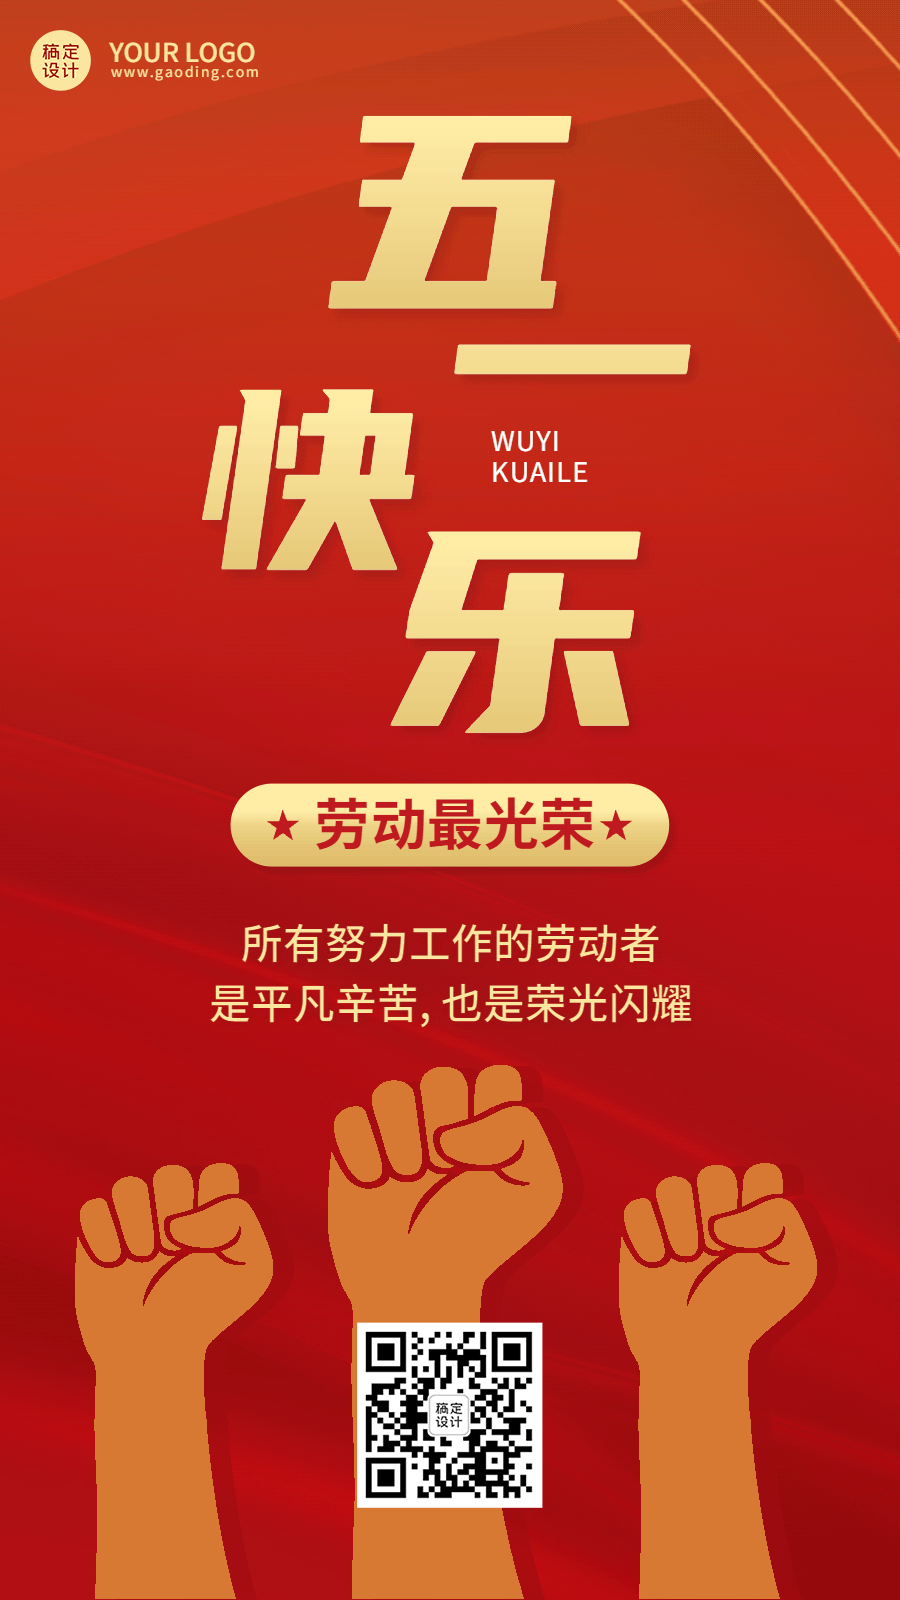 劳动节节日祝福排版动态海报预览效果